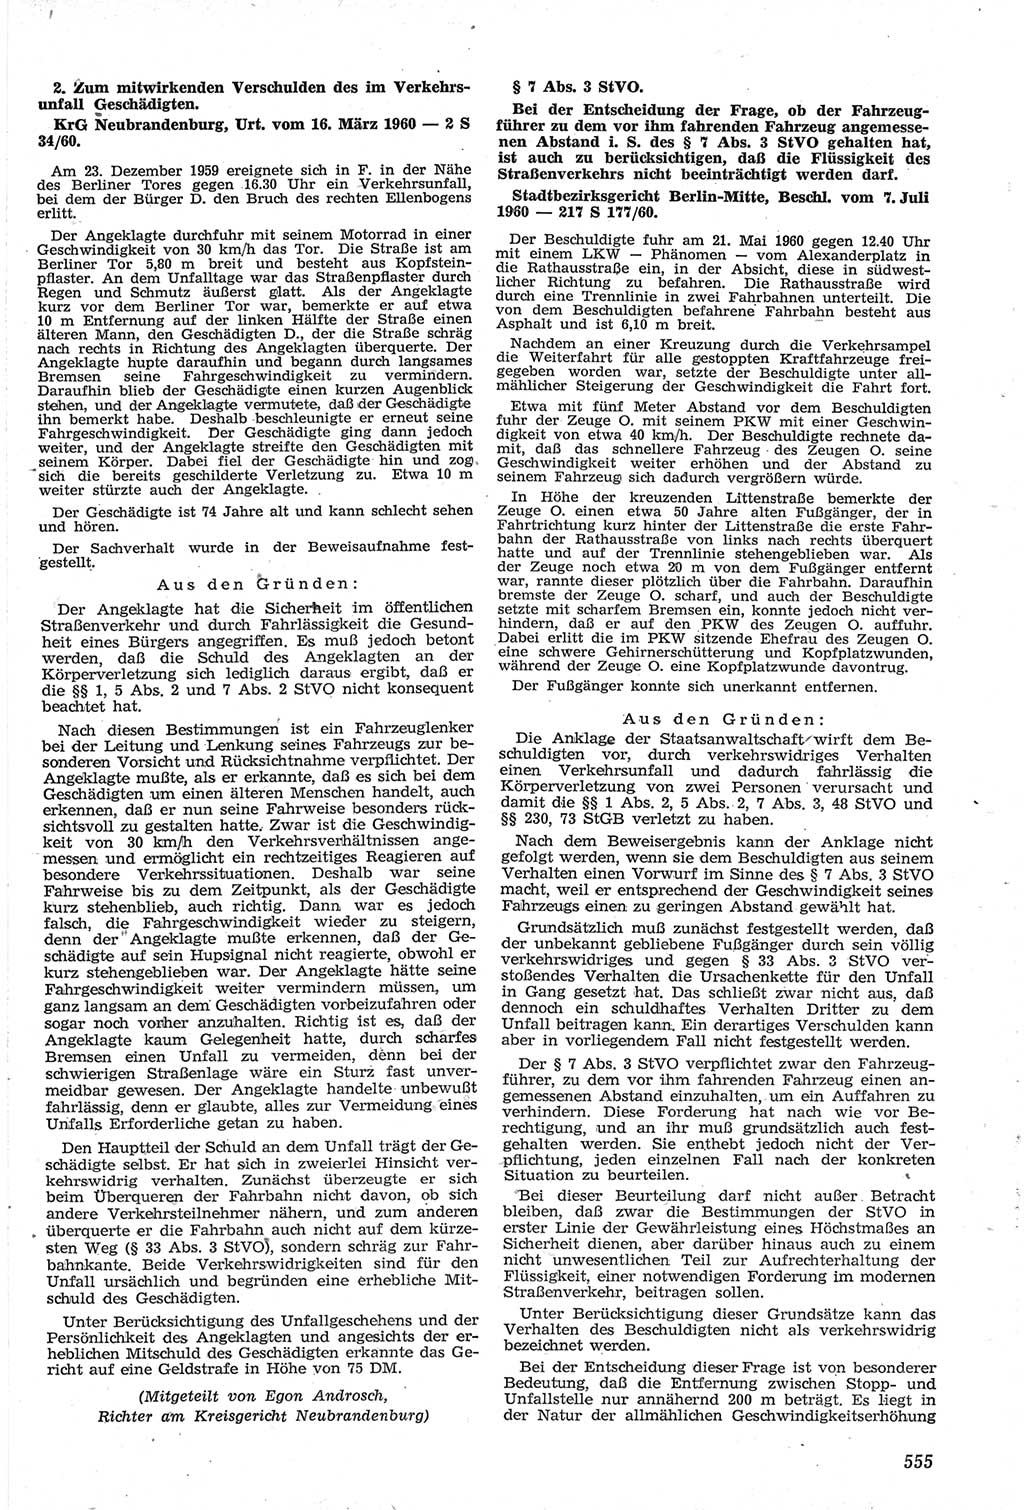 Neue Justiz (NJ), Zeitschrift für Recht und Rechtswissenschaft [Deutsche Demokratische Republik (DDR)], 14. Jahrgang 1960, Seite 555 (NJ DDR 1960, S. 555)